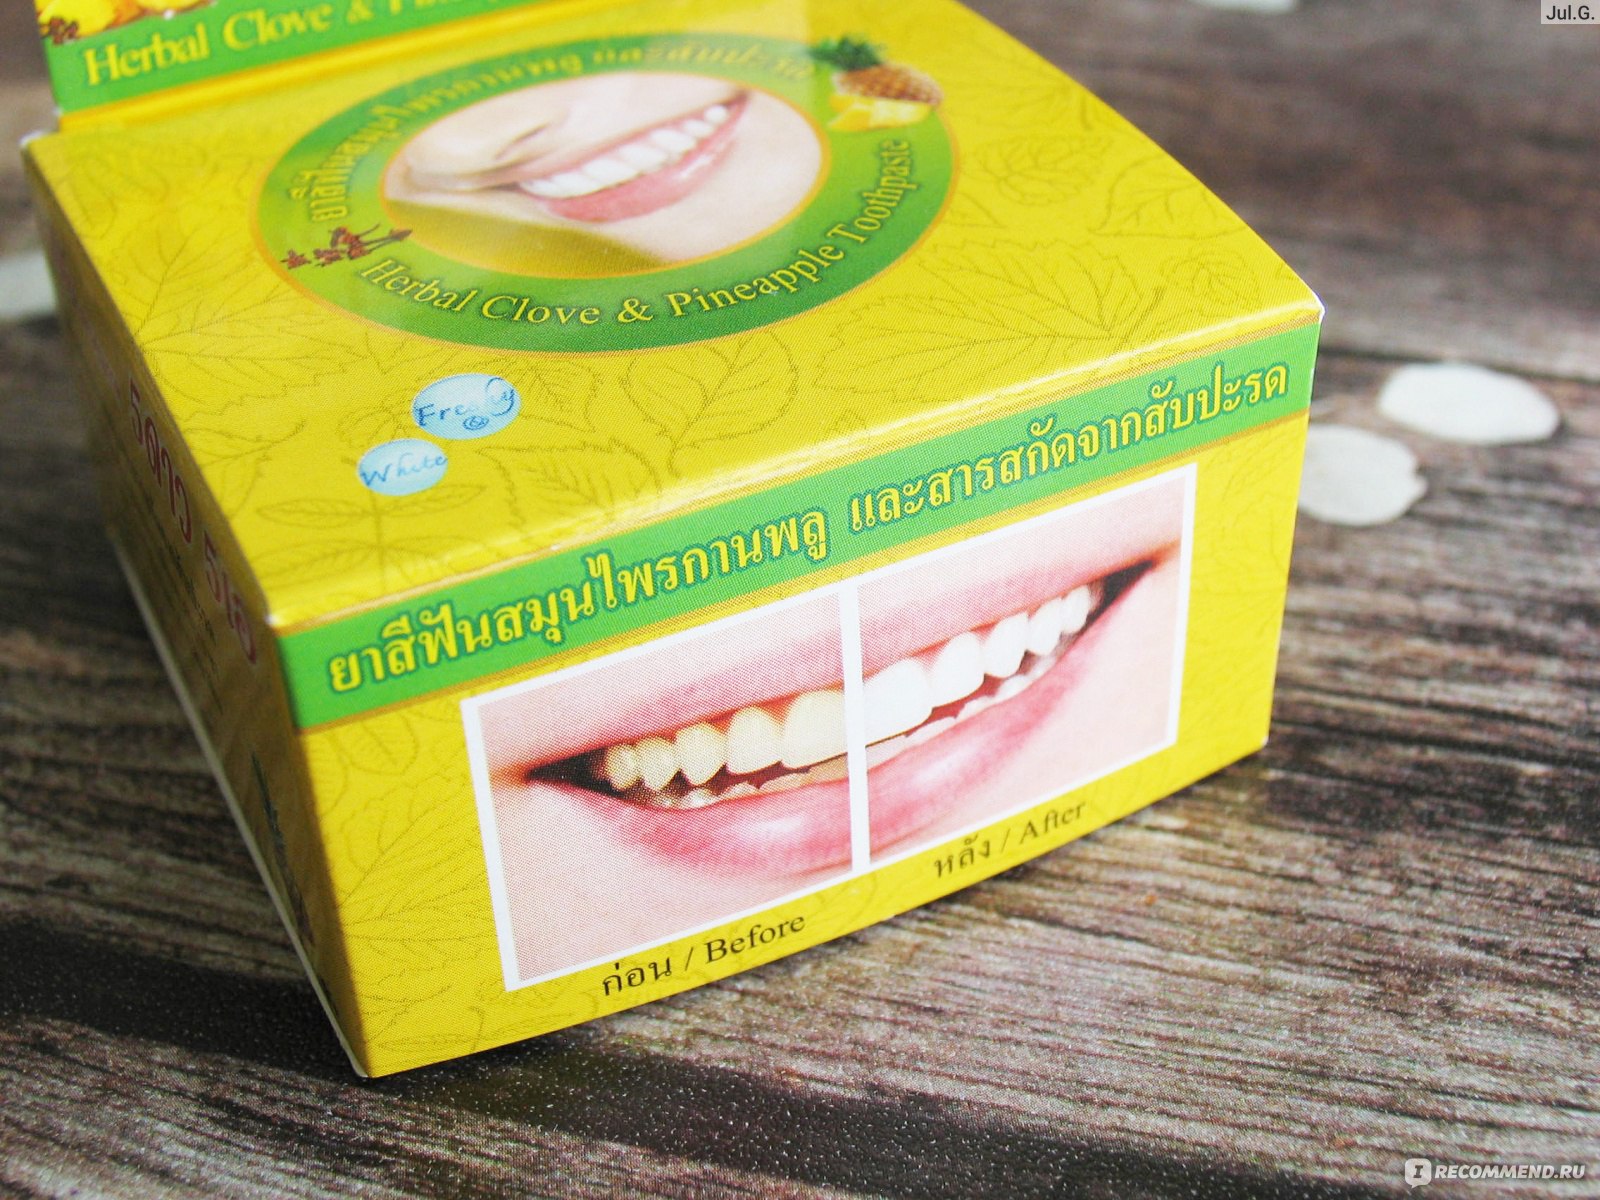 Отбеливающая тайская зубная паста: свойства пасты, отзывы стоматологов